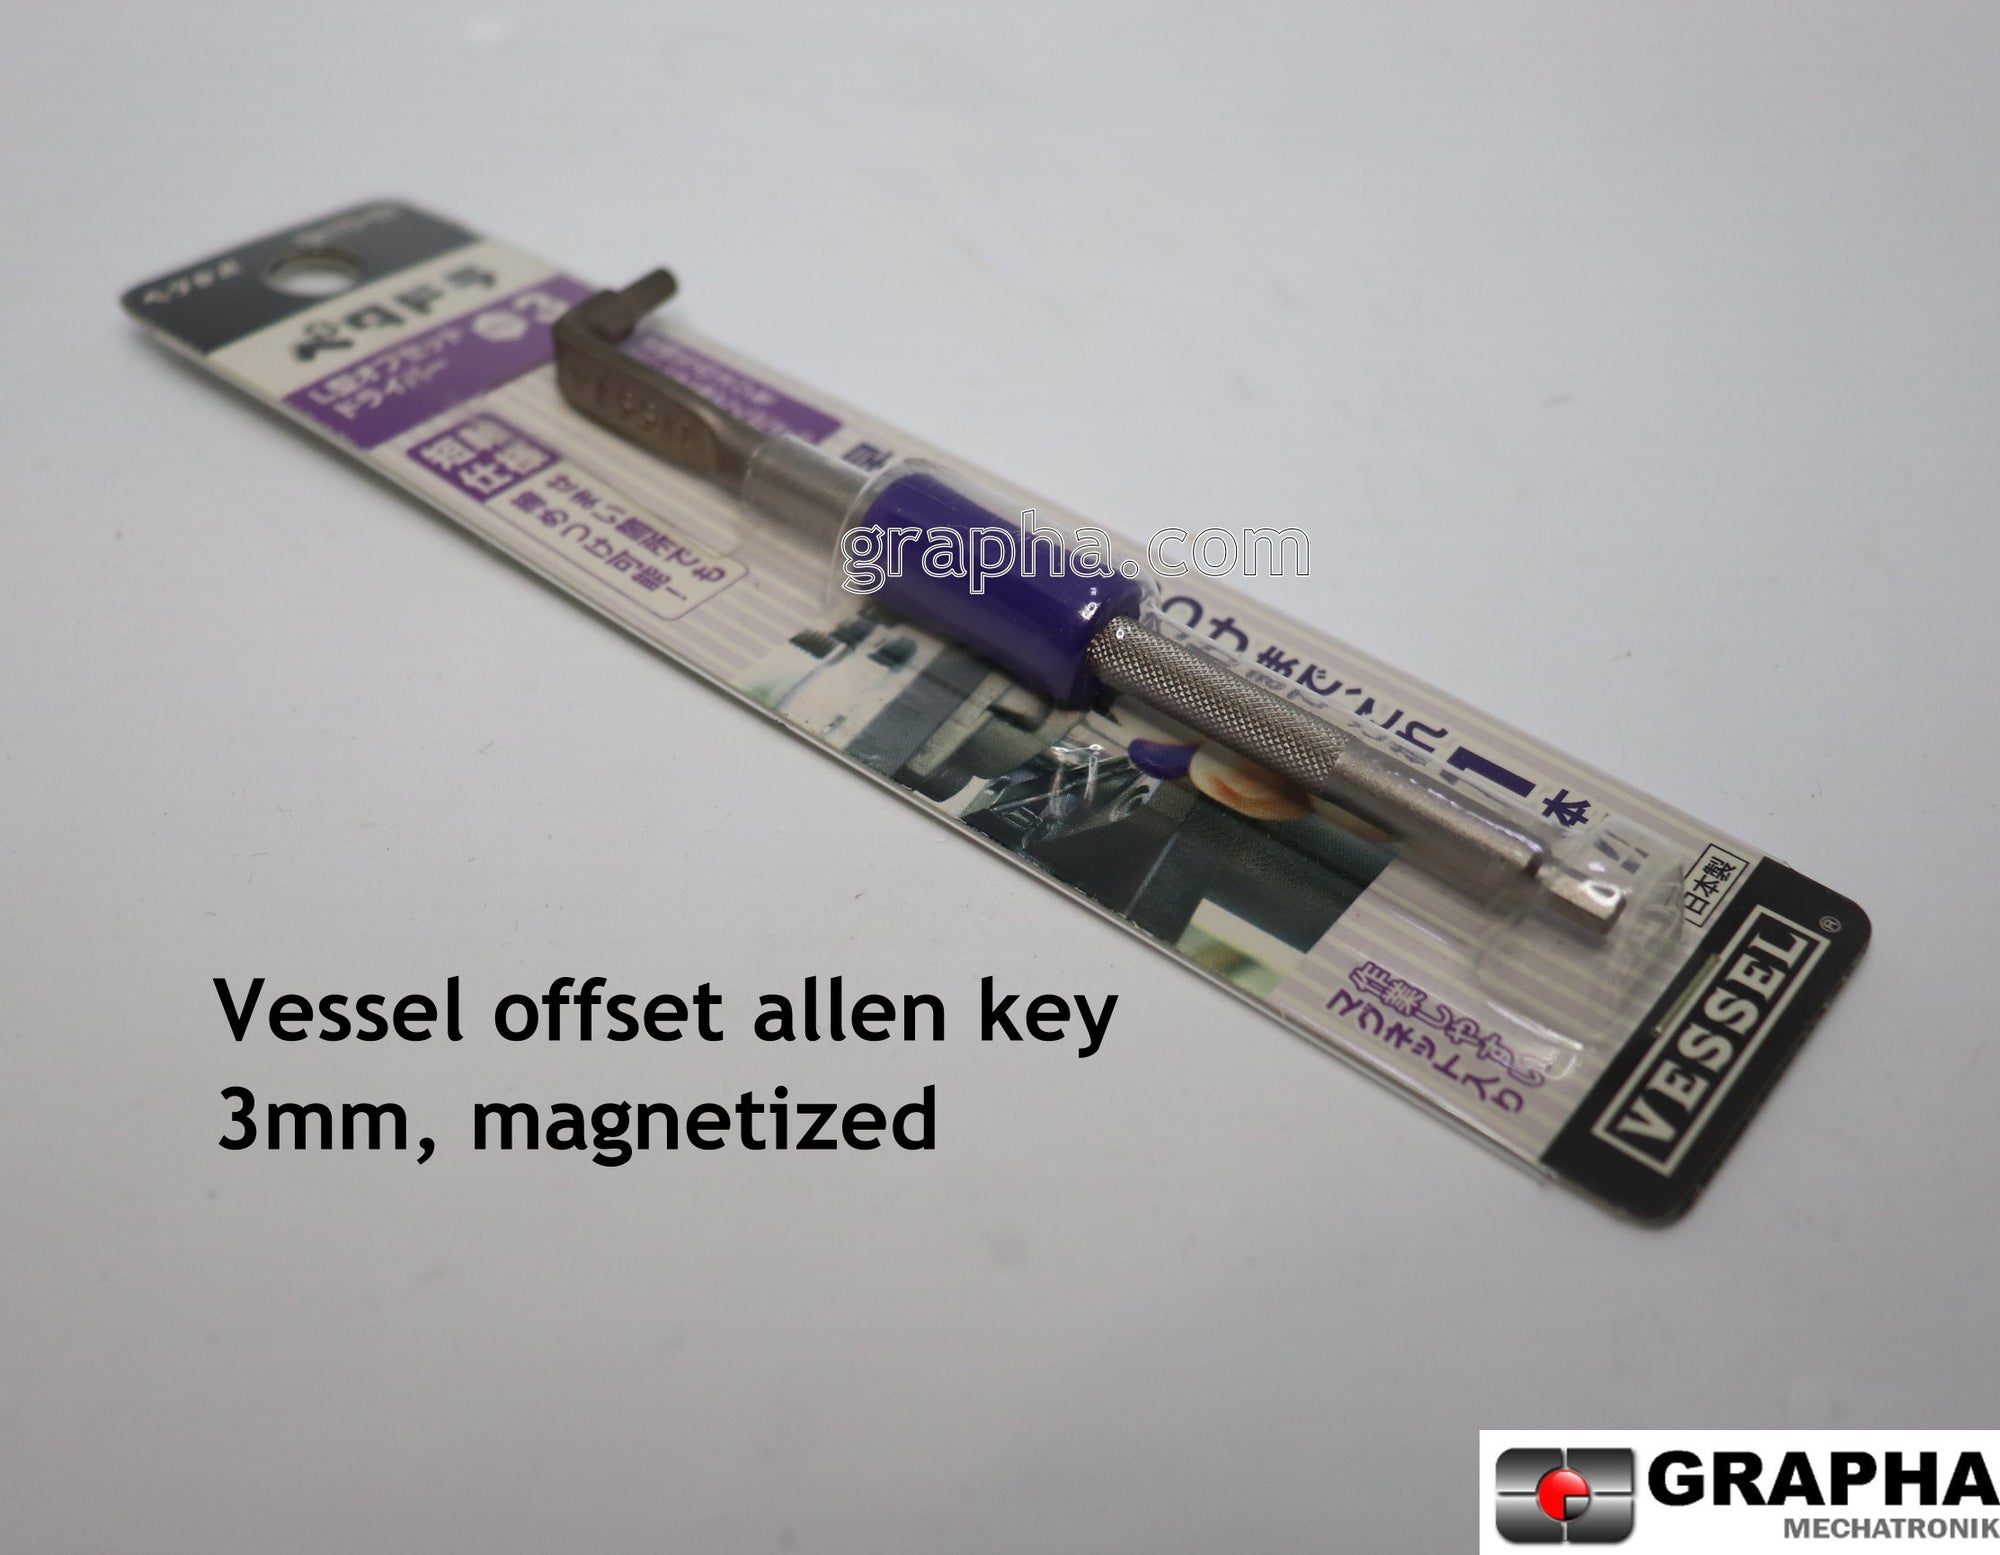 Compact offset allen key 3mm